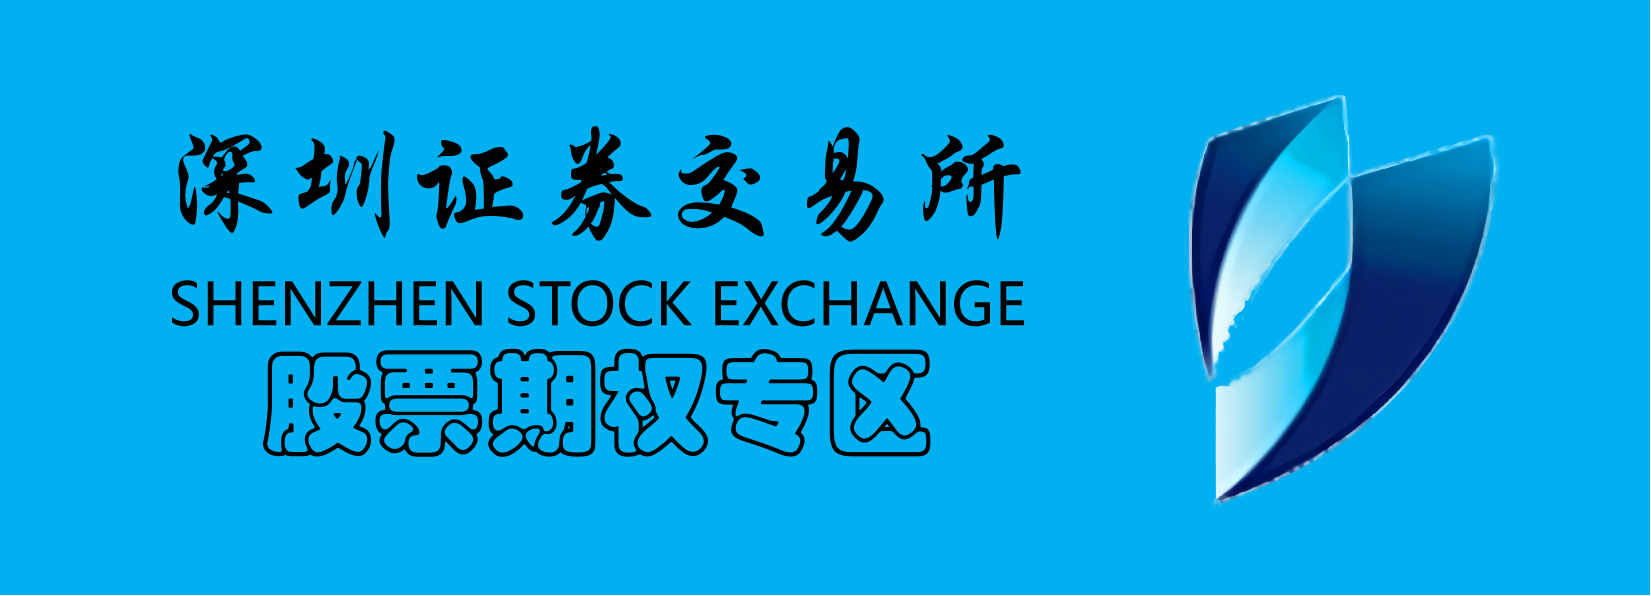 深圳证券交易所logo